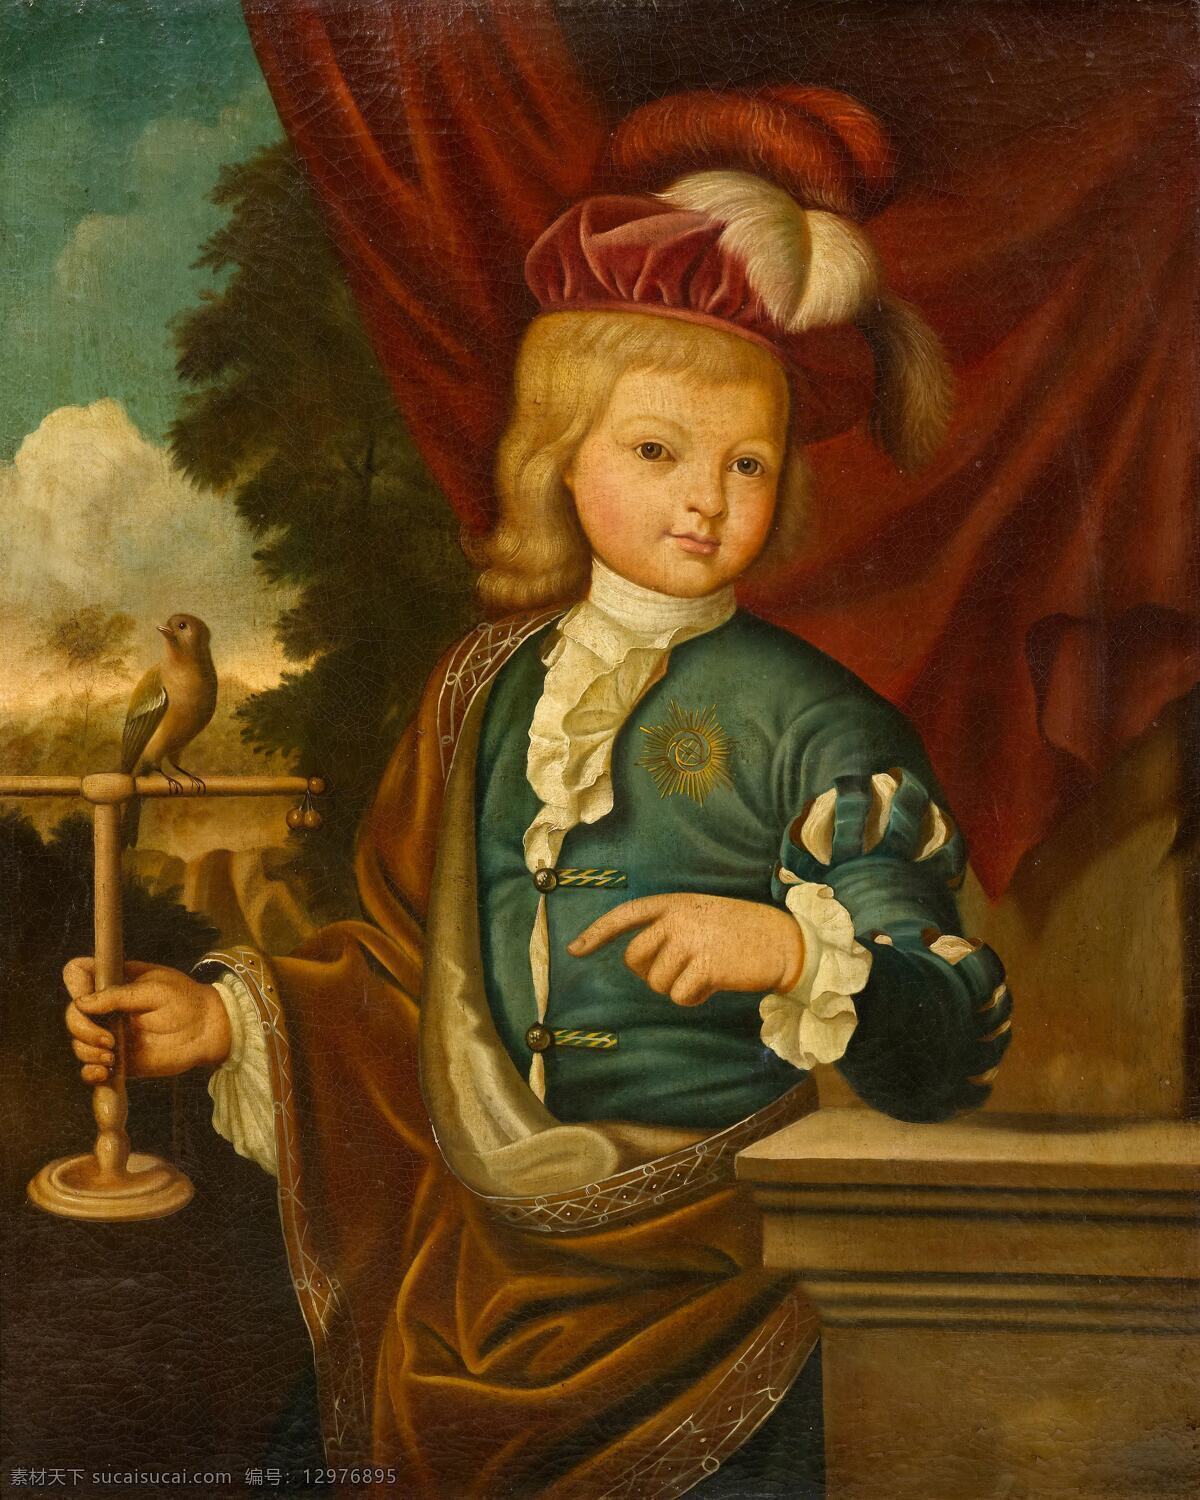 男孩儿与鸟儿 贵族之家 儿童 羽毛帽子 水泥台 红色帘子 古典油画 油画 文化艺术 绘画书法